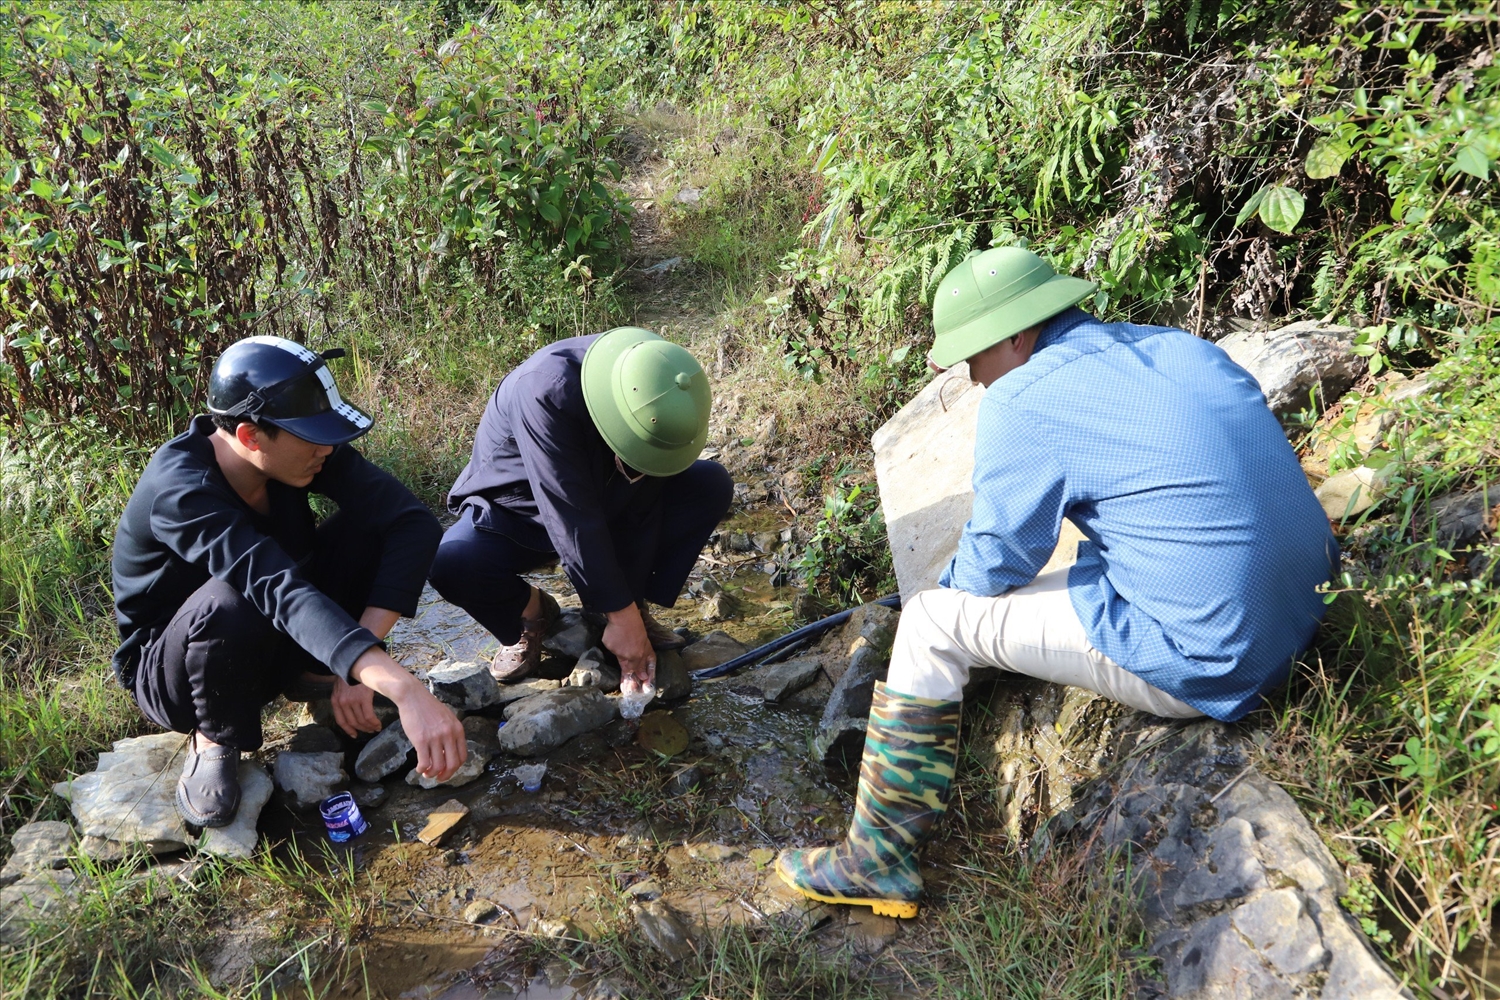 Để đến được nguồn nước, các thầy phải đi đoạn đường hơn 10km, đi qua địa phận xã bạn Xín Cái và dọc tuyến biên giới 